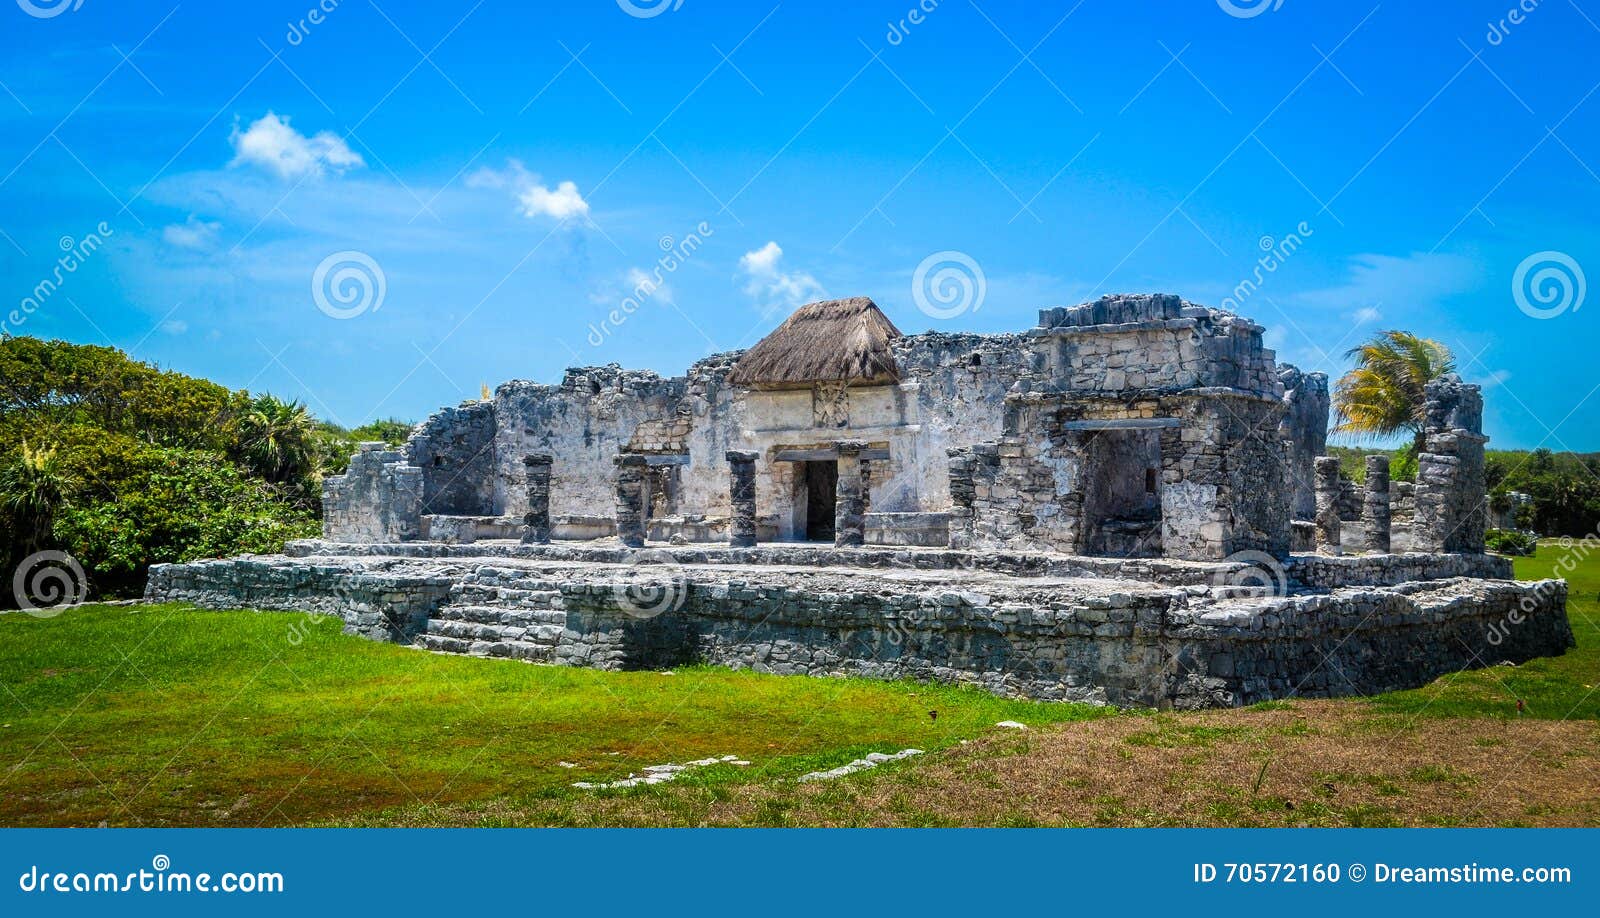 tropical ruins of mayas